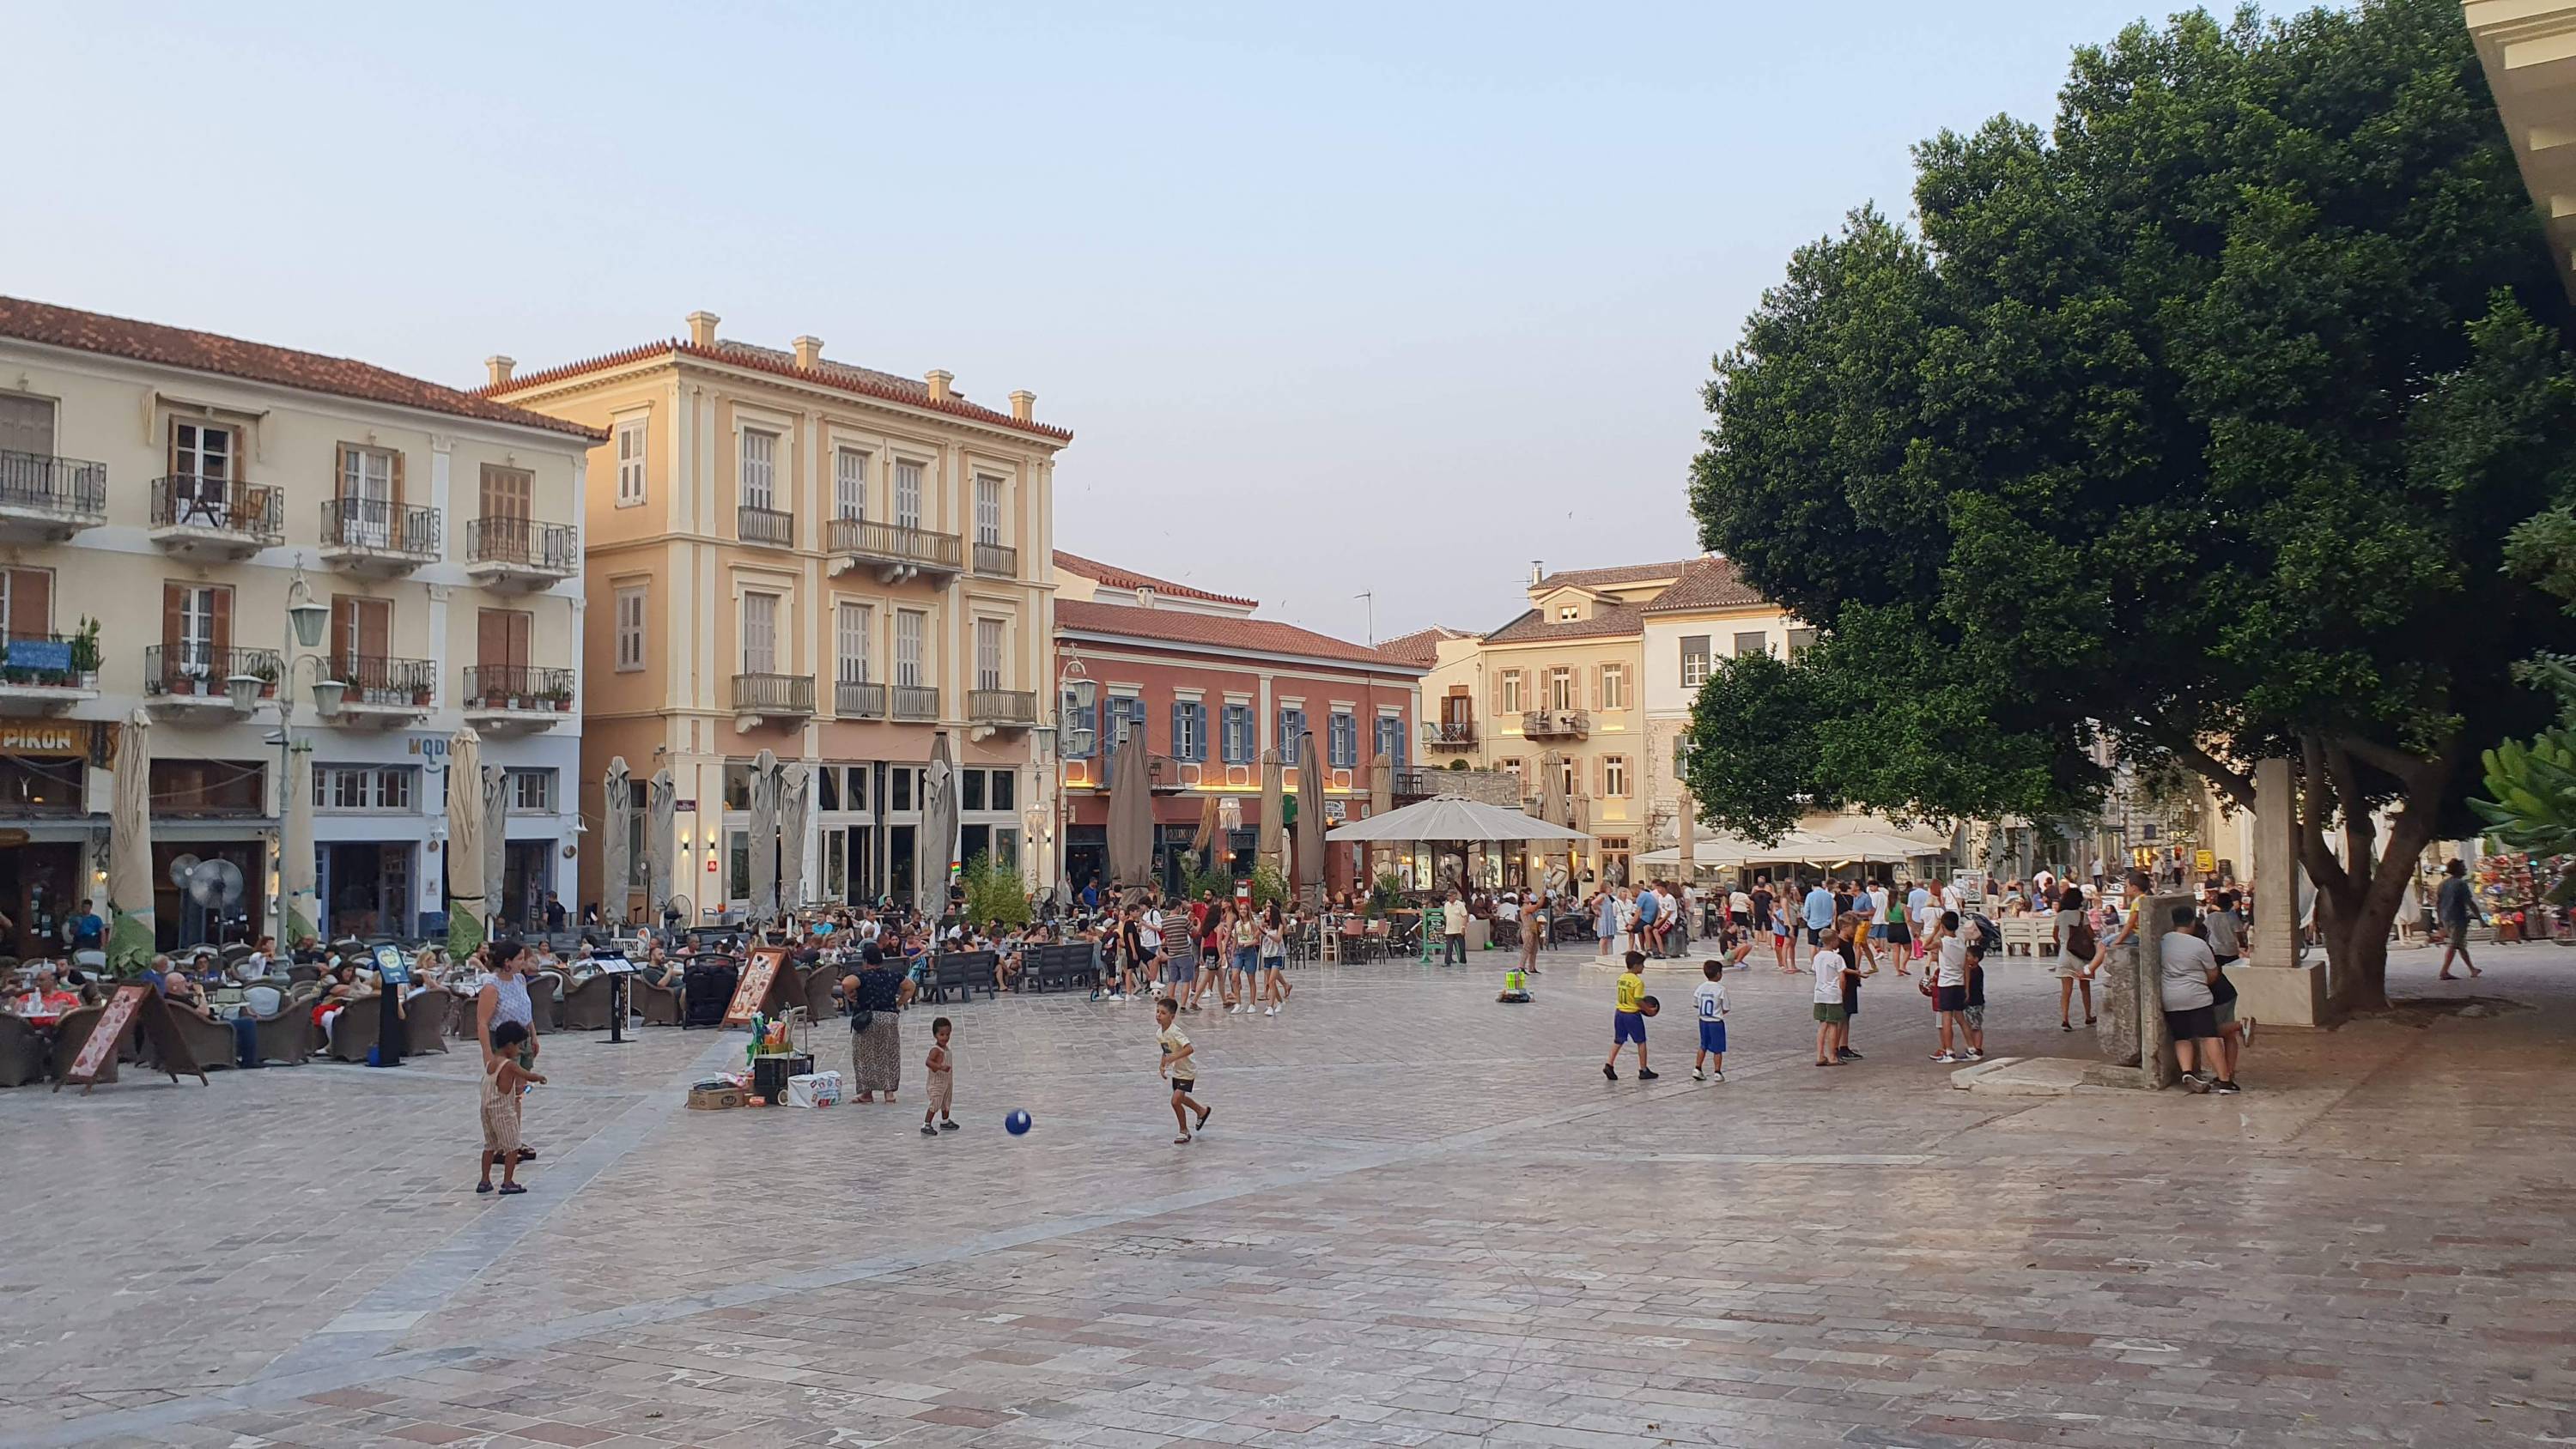 Nafplion - einst Hauptstadt des jungen Staates Griechenland - ist von vielerlei Einflüssen geprägt. Die wuselige Altstadt besticht mit aufgeräumter Sauberkeit, mediterranem Flair und weiten Plätzen.